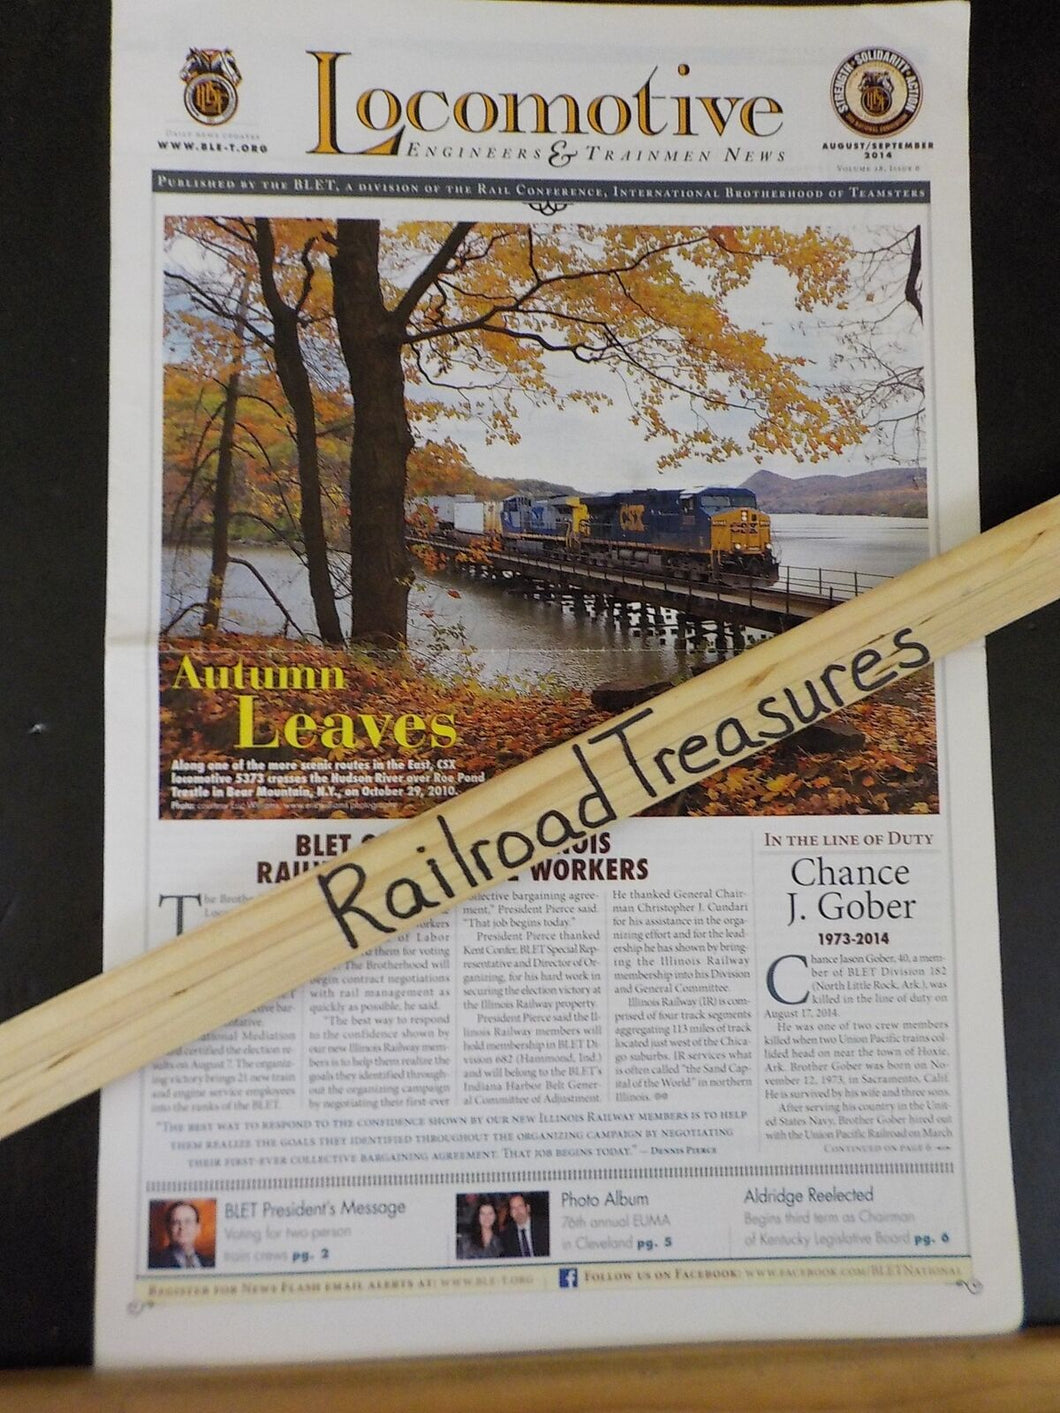 Locomotive Engineers & Trainmen News 2014 August/September Autumn Leaves